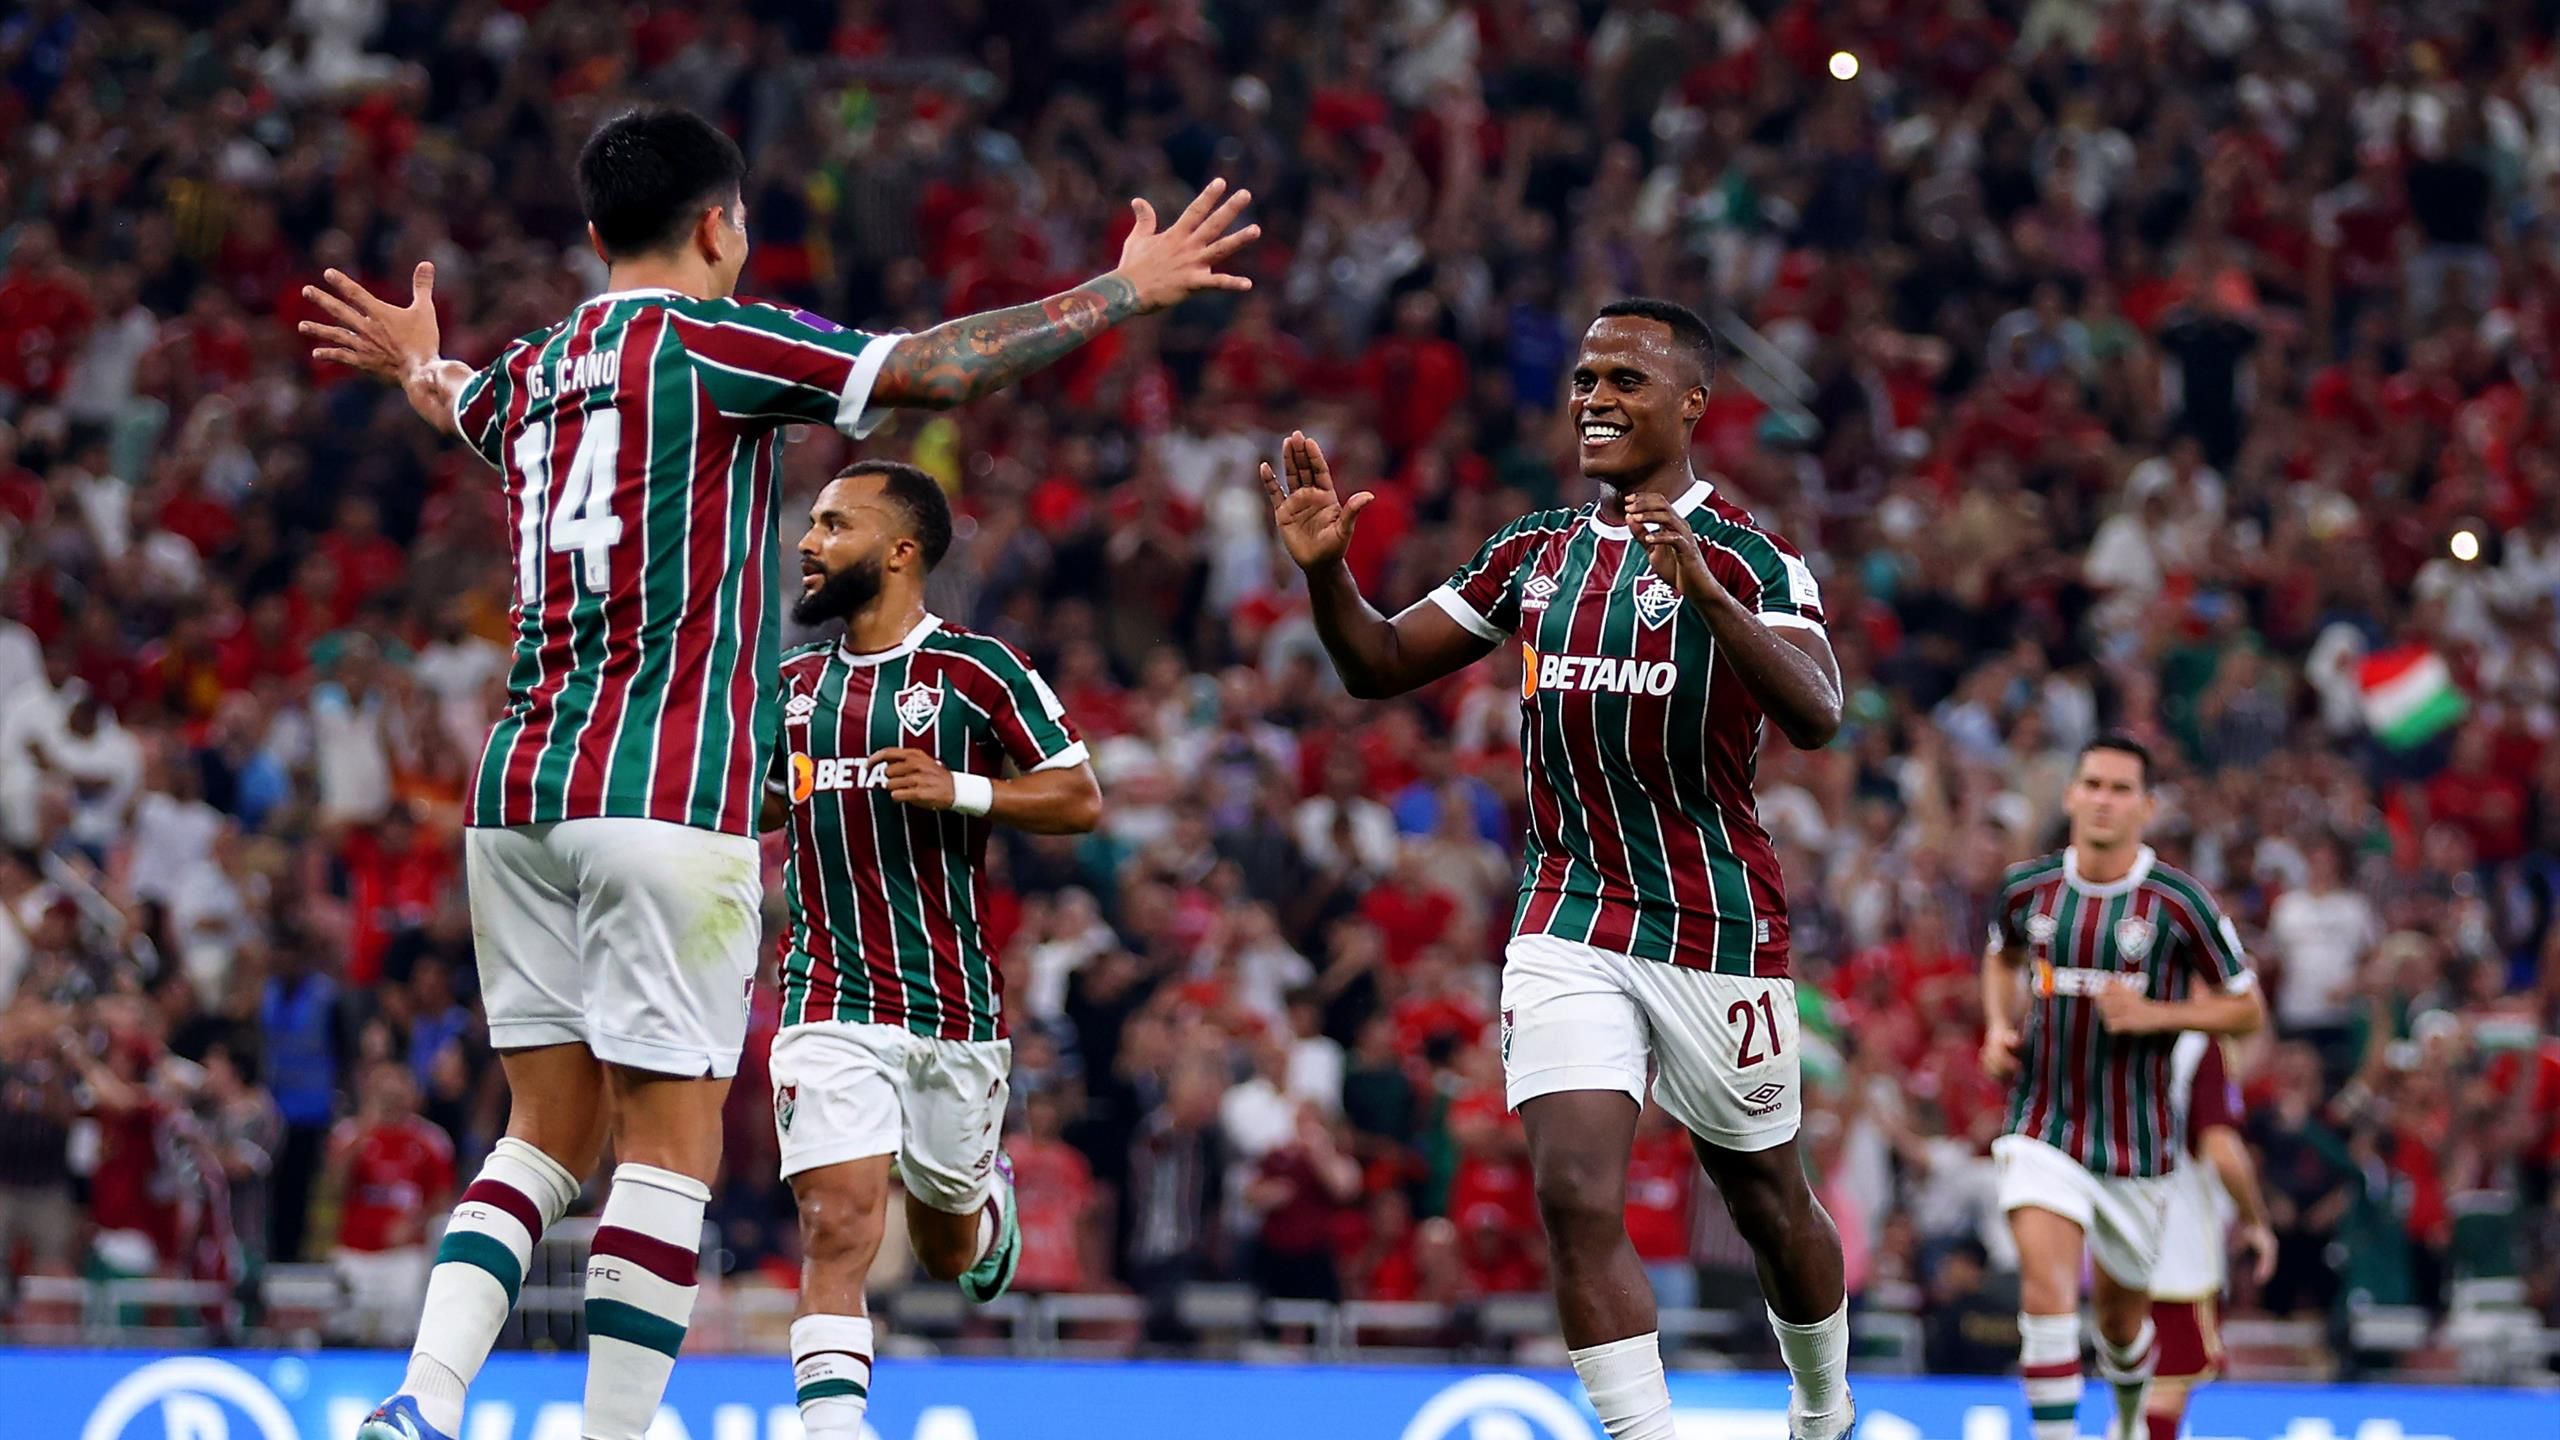 Fluminense 20 Al Ahly Jhon Arias and John Kennedy goals send